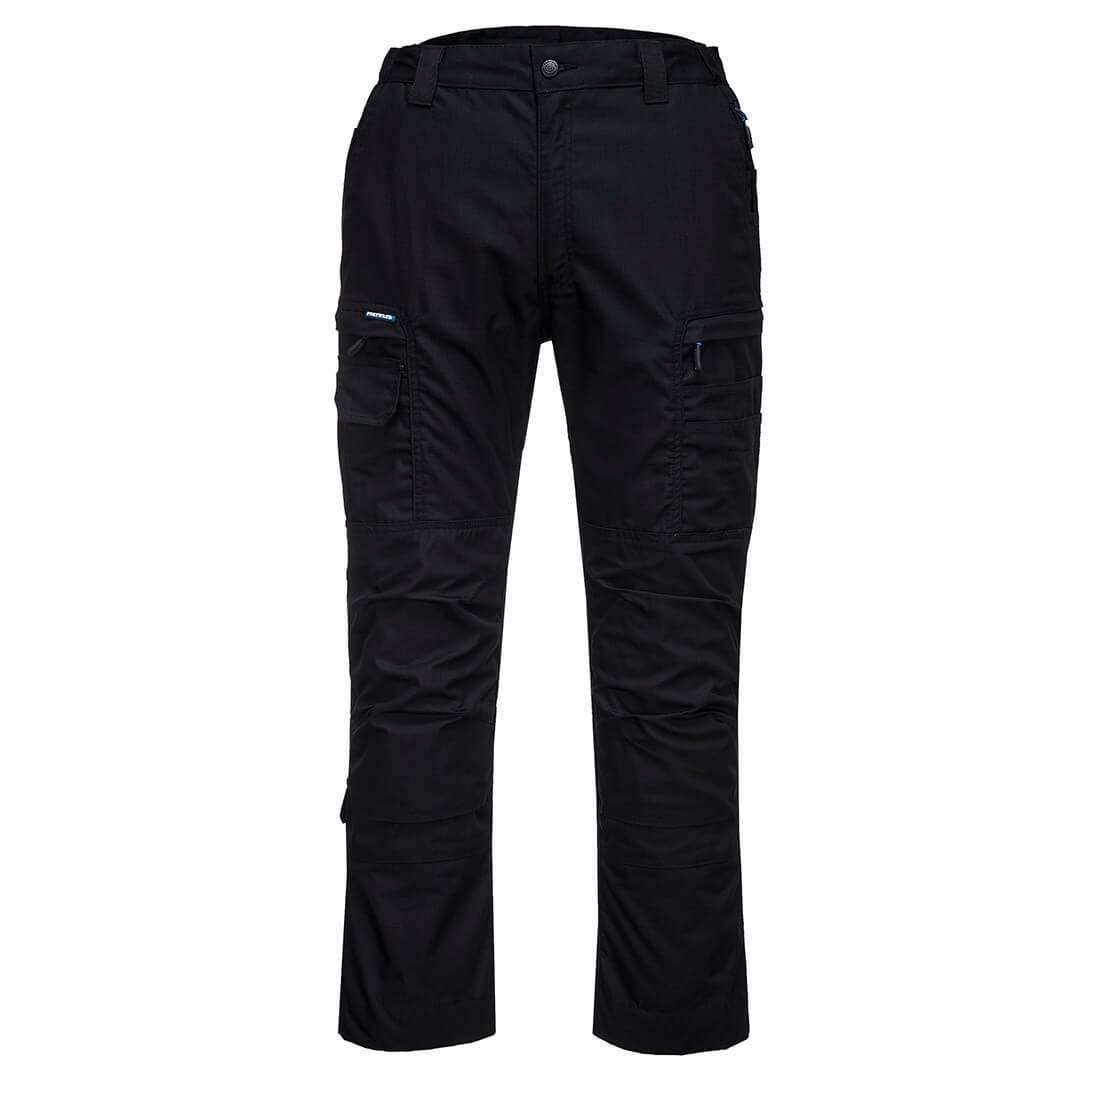 Pantalone KX3 Ripstop - Abbigliamento di protezione